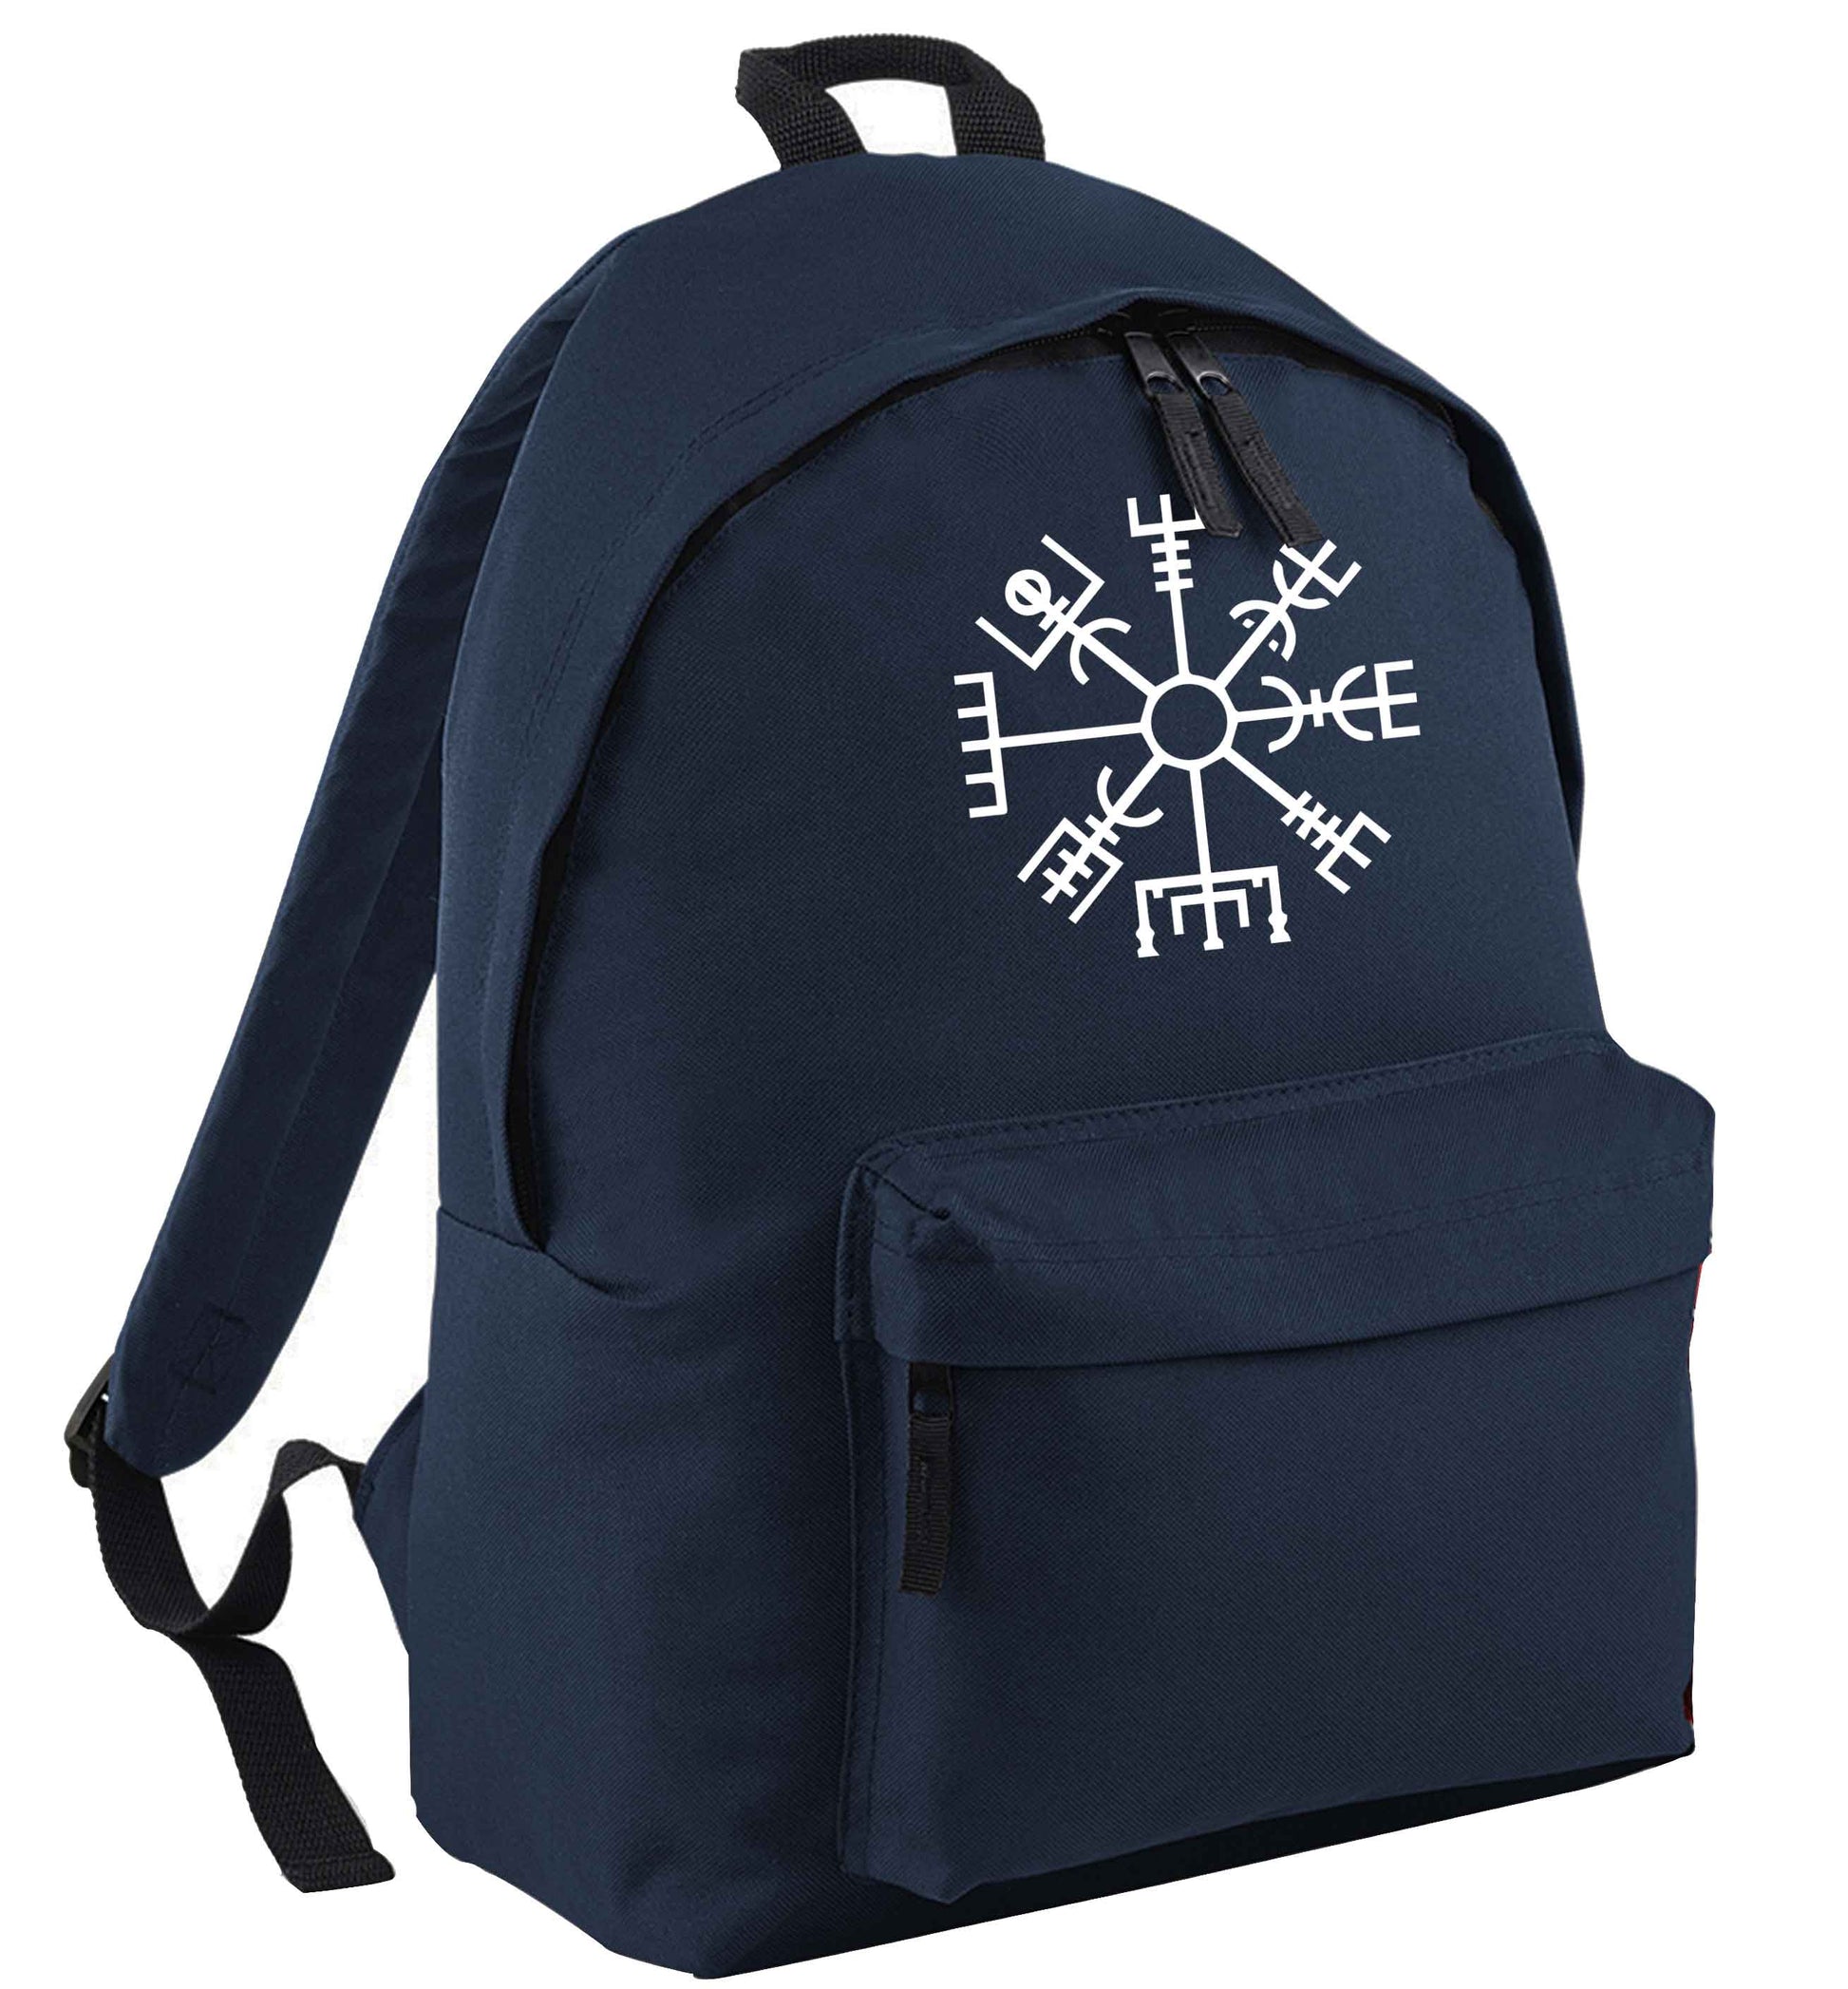 Vegv‚Äö√Ñ√¥sir wayfinder | Children's backpack